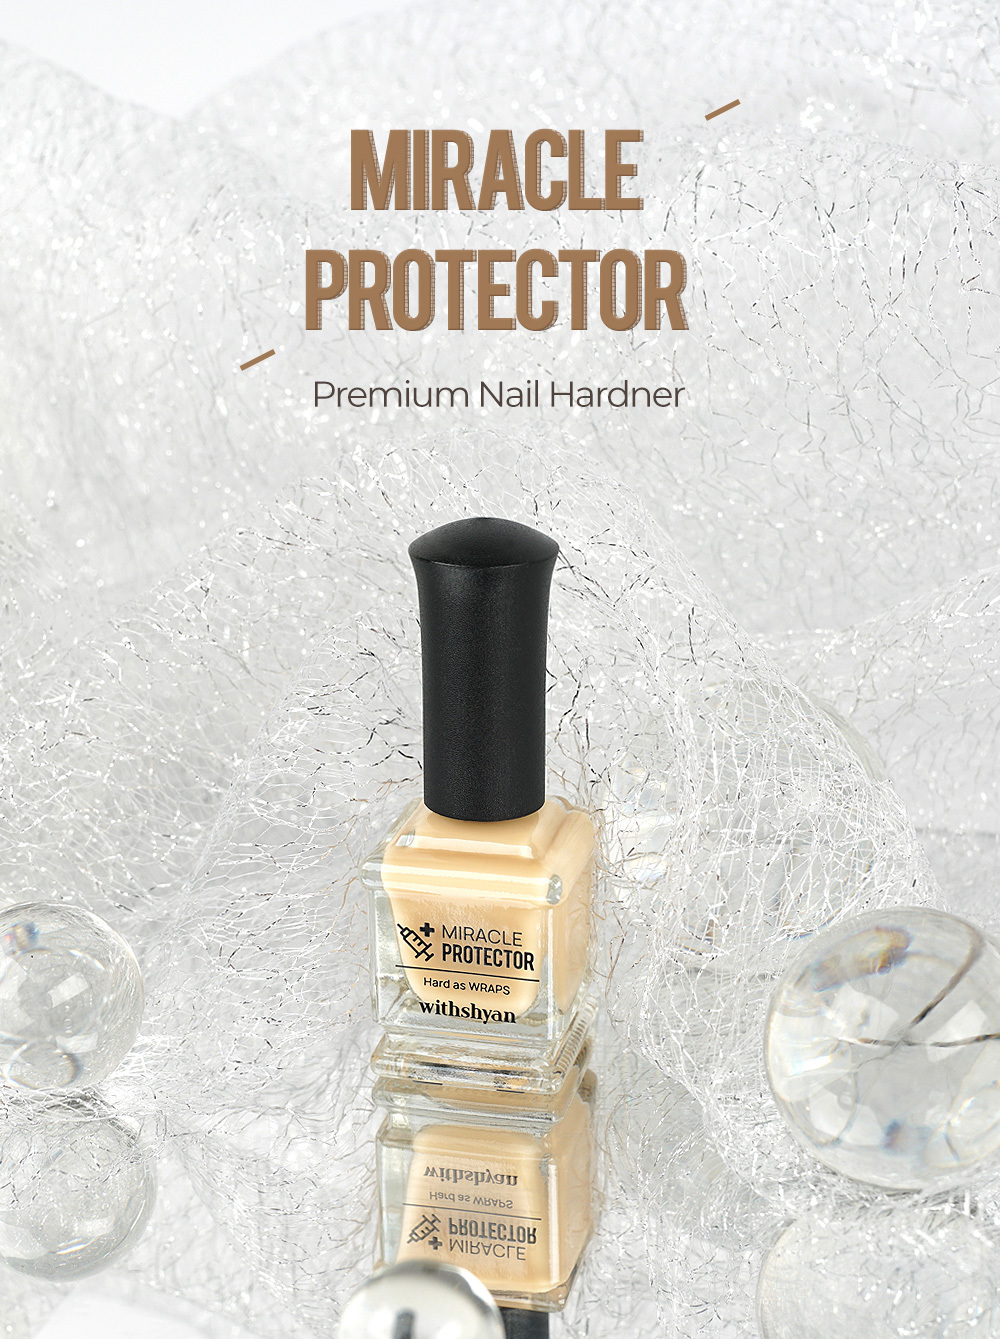 Nail Protector & Harddener